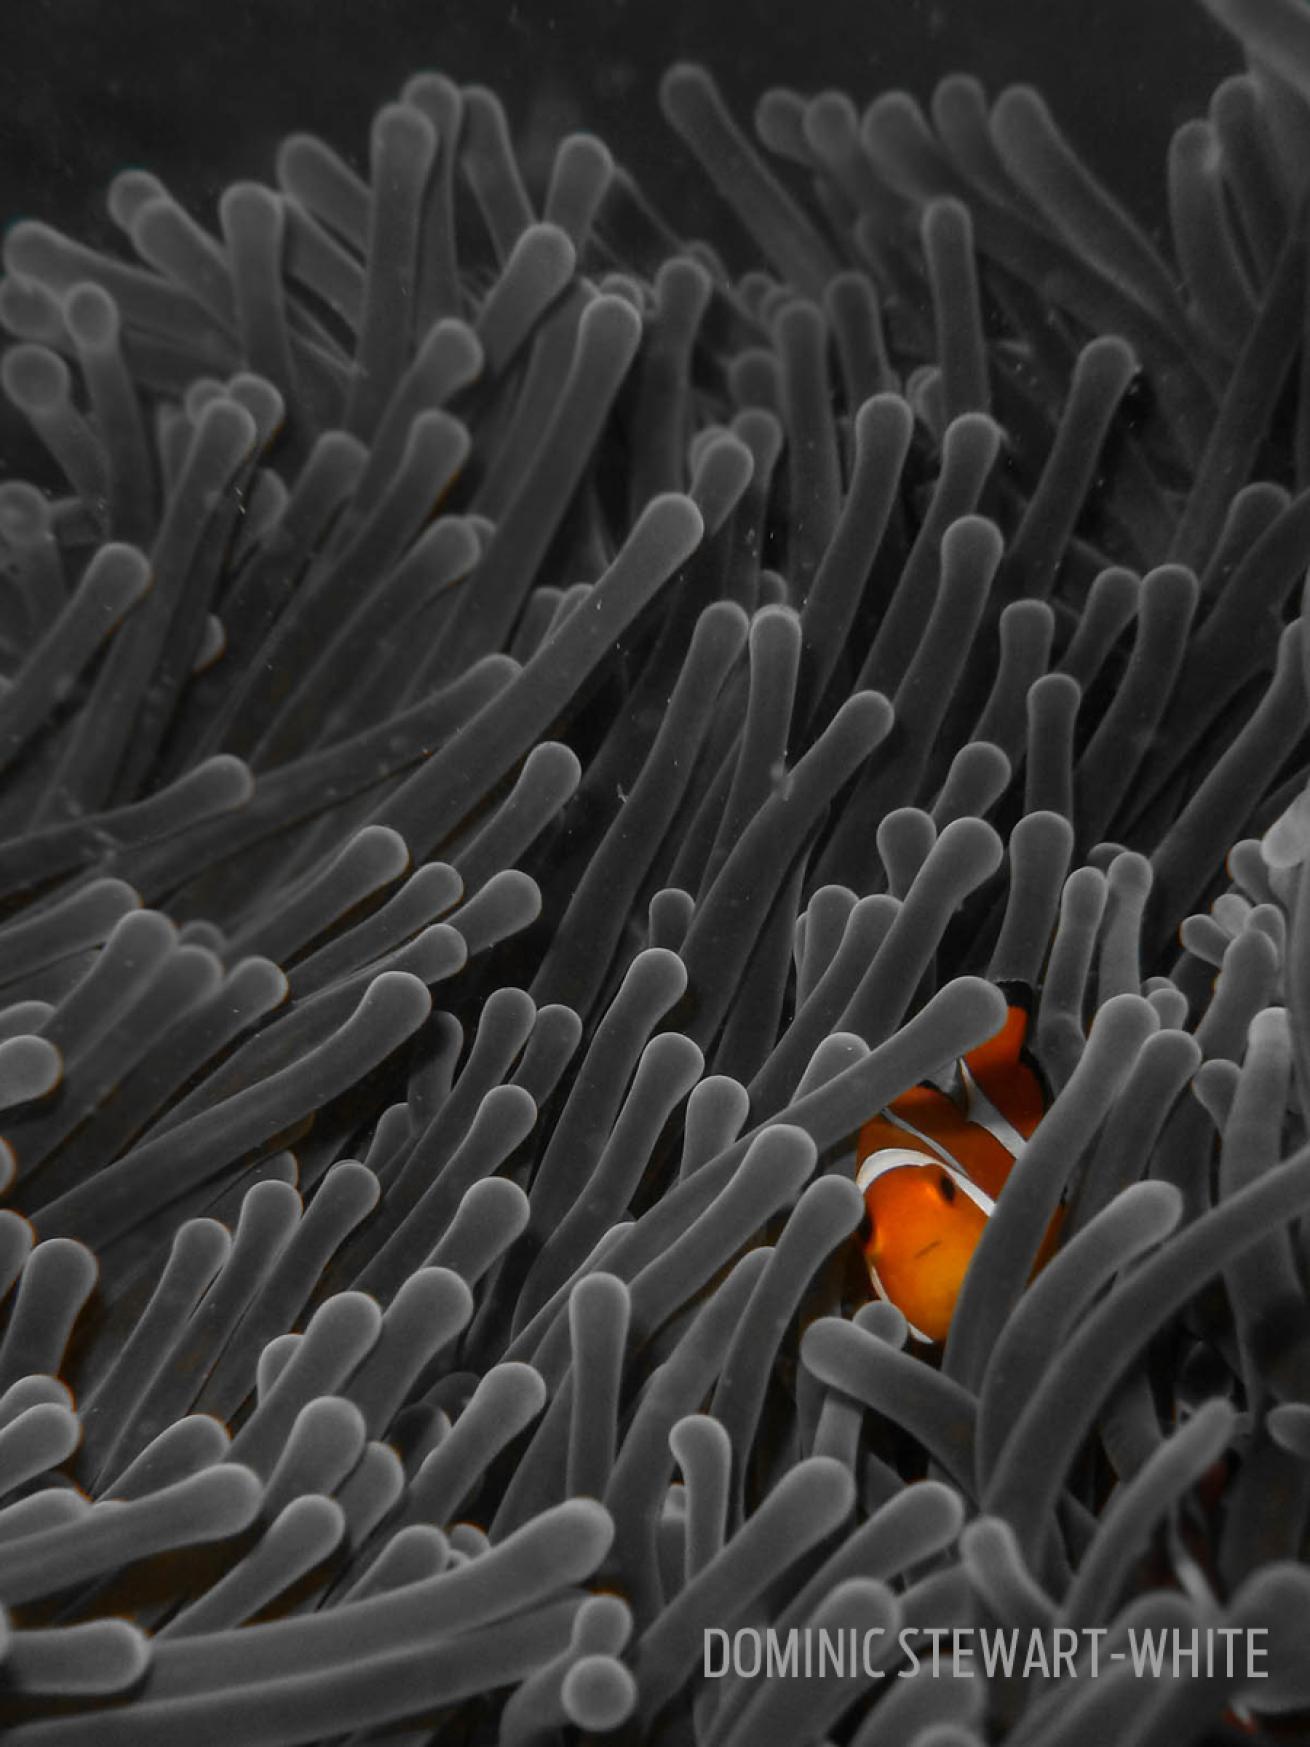 nemo peek gray anemone clownfish underwater photography